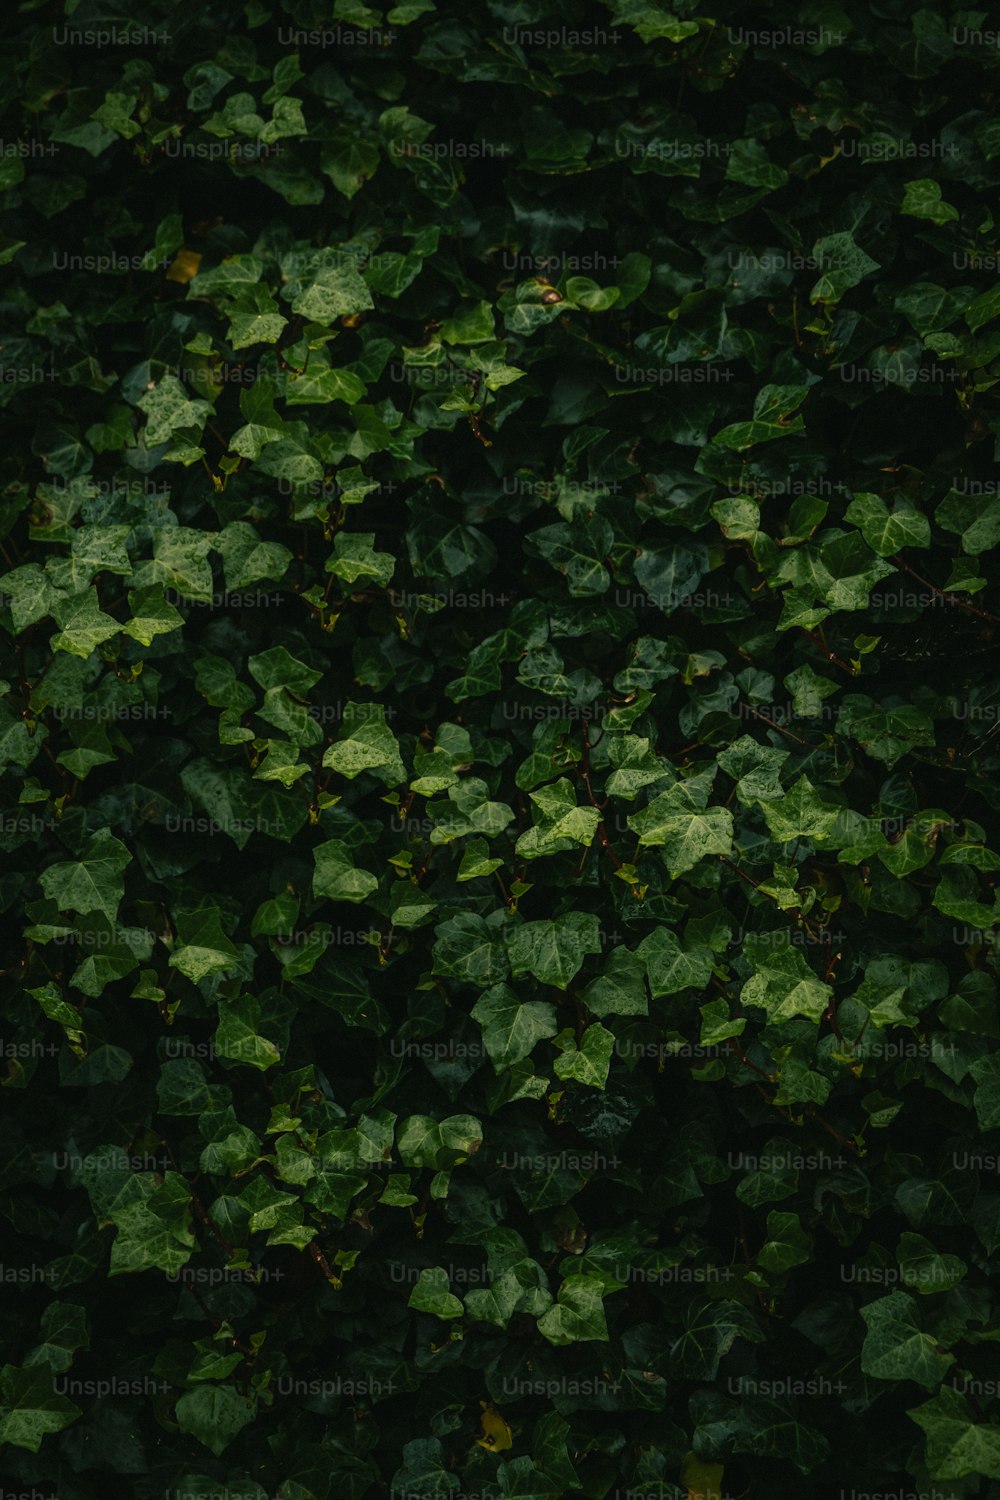 벽에 자라는 녹색 잎사귀 한 뭉치